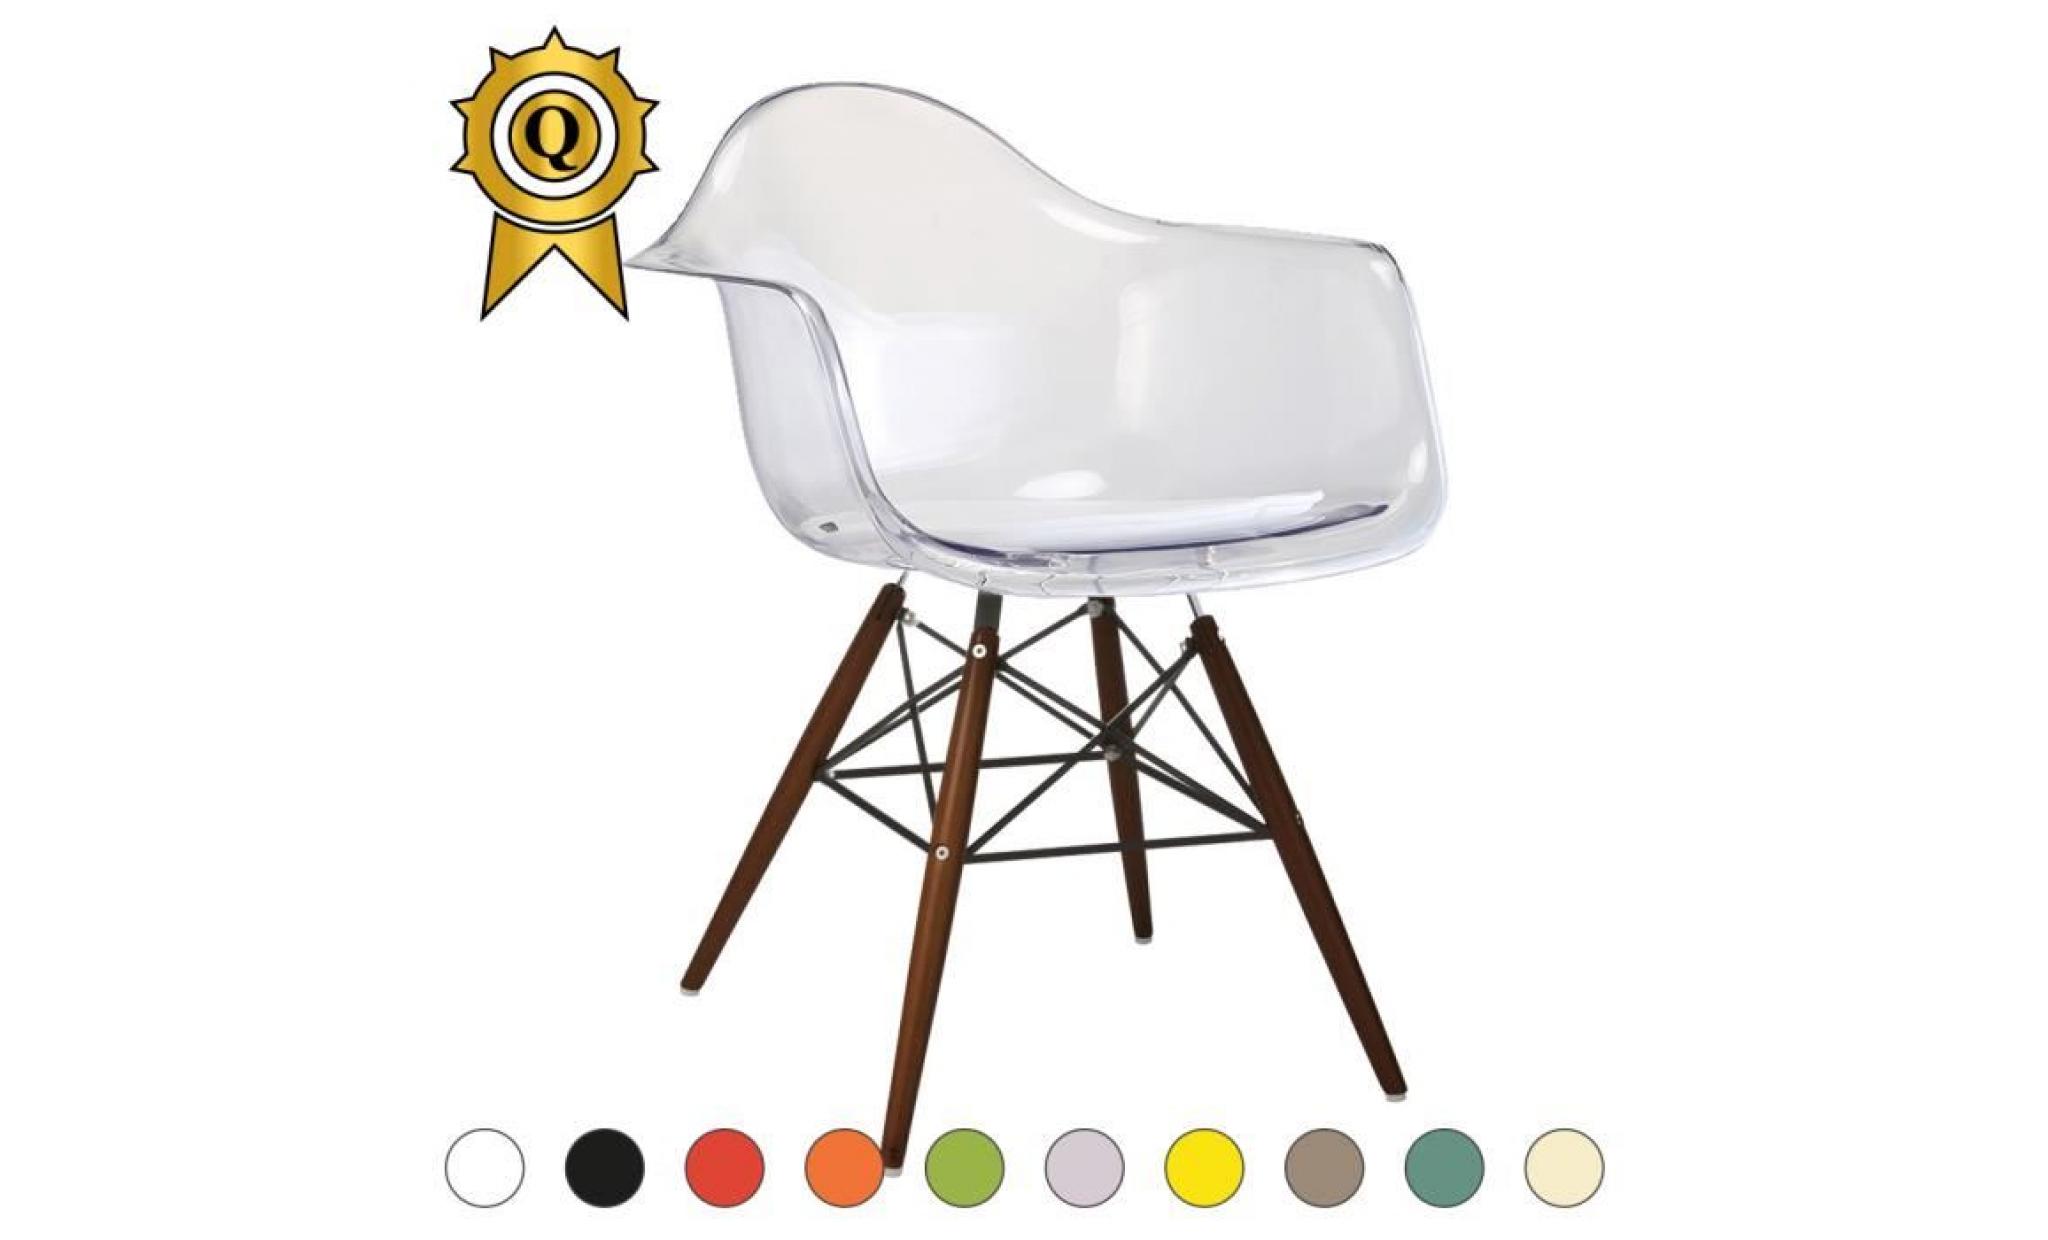 1 x fauteuil design retro style charles eames daw hauteur 48cm pieds en bois noir assise vert kaki mobistyl®